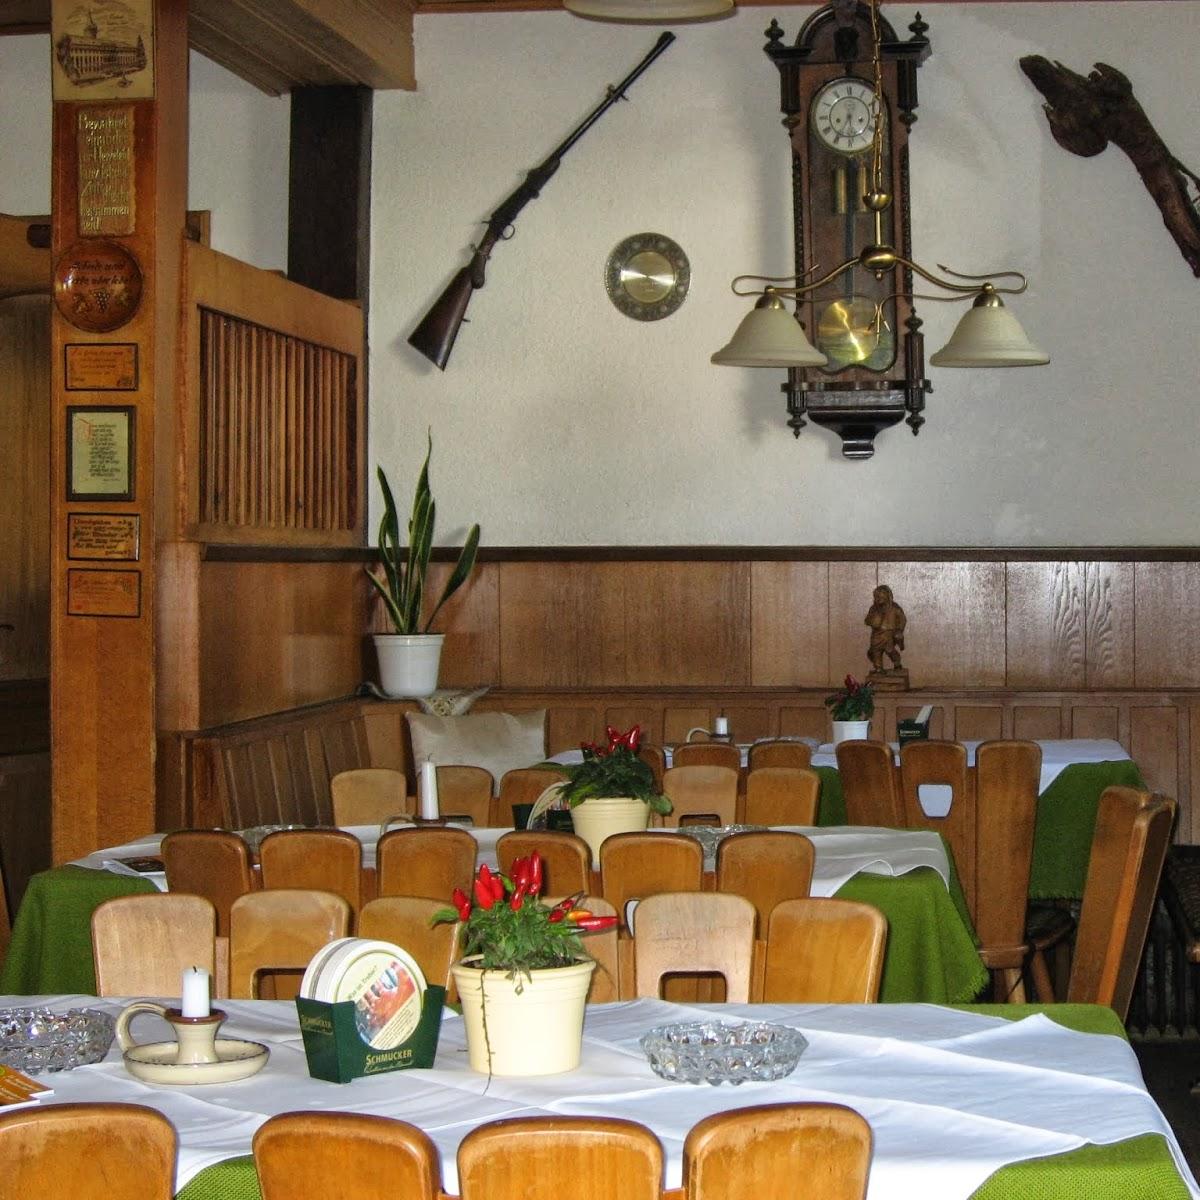 Restaurant "Gasthaus Zur Schmelz" in Mossautal